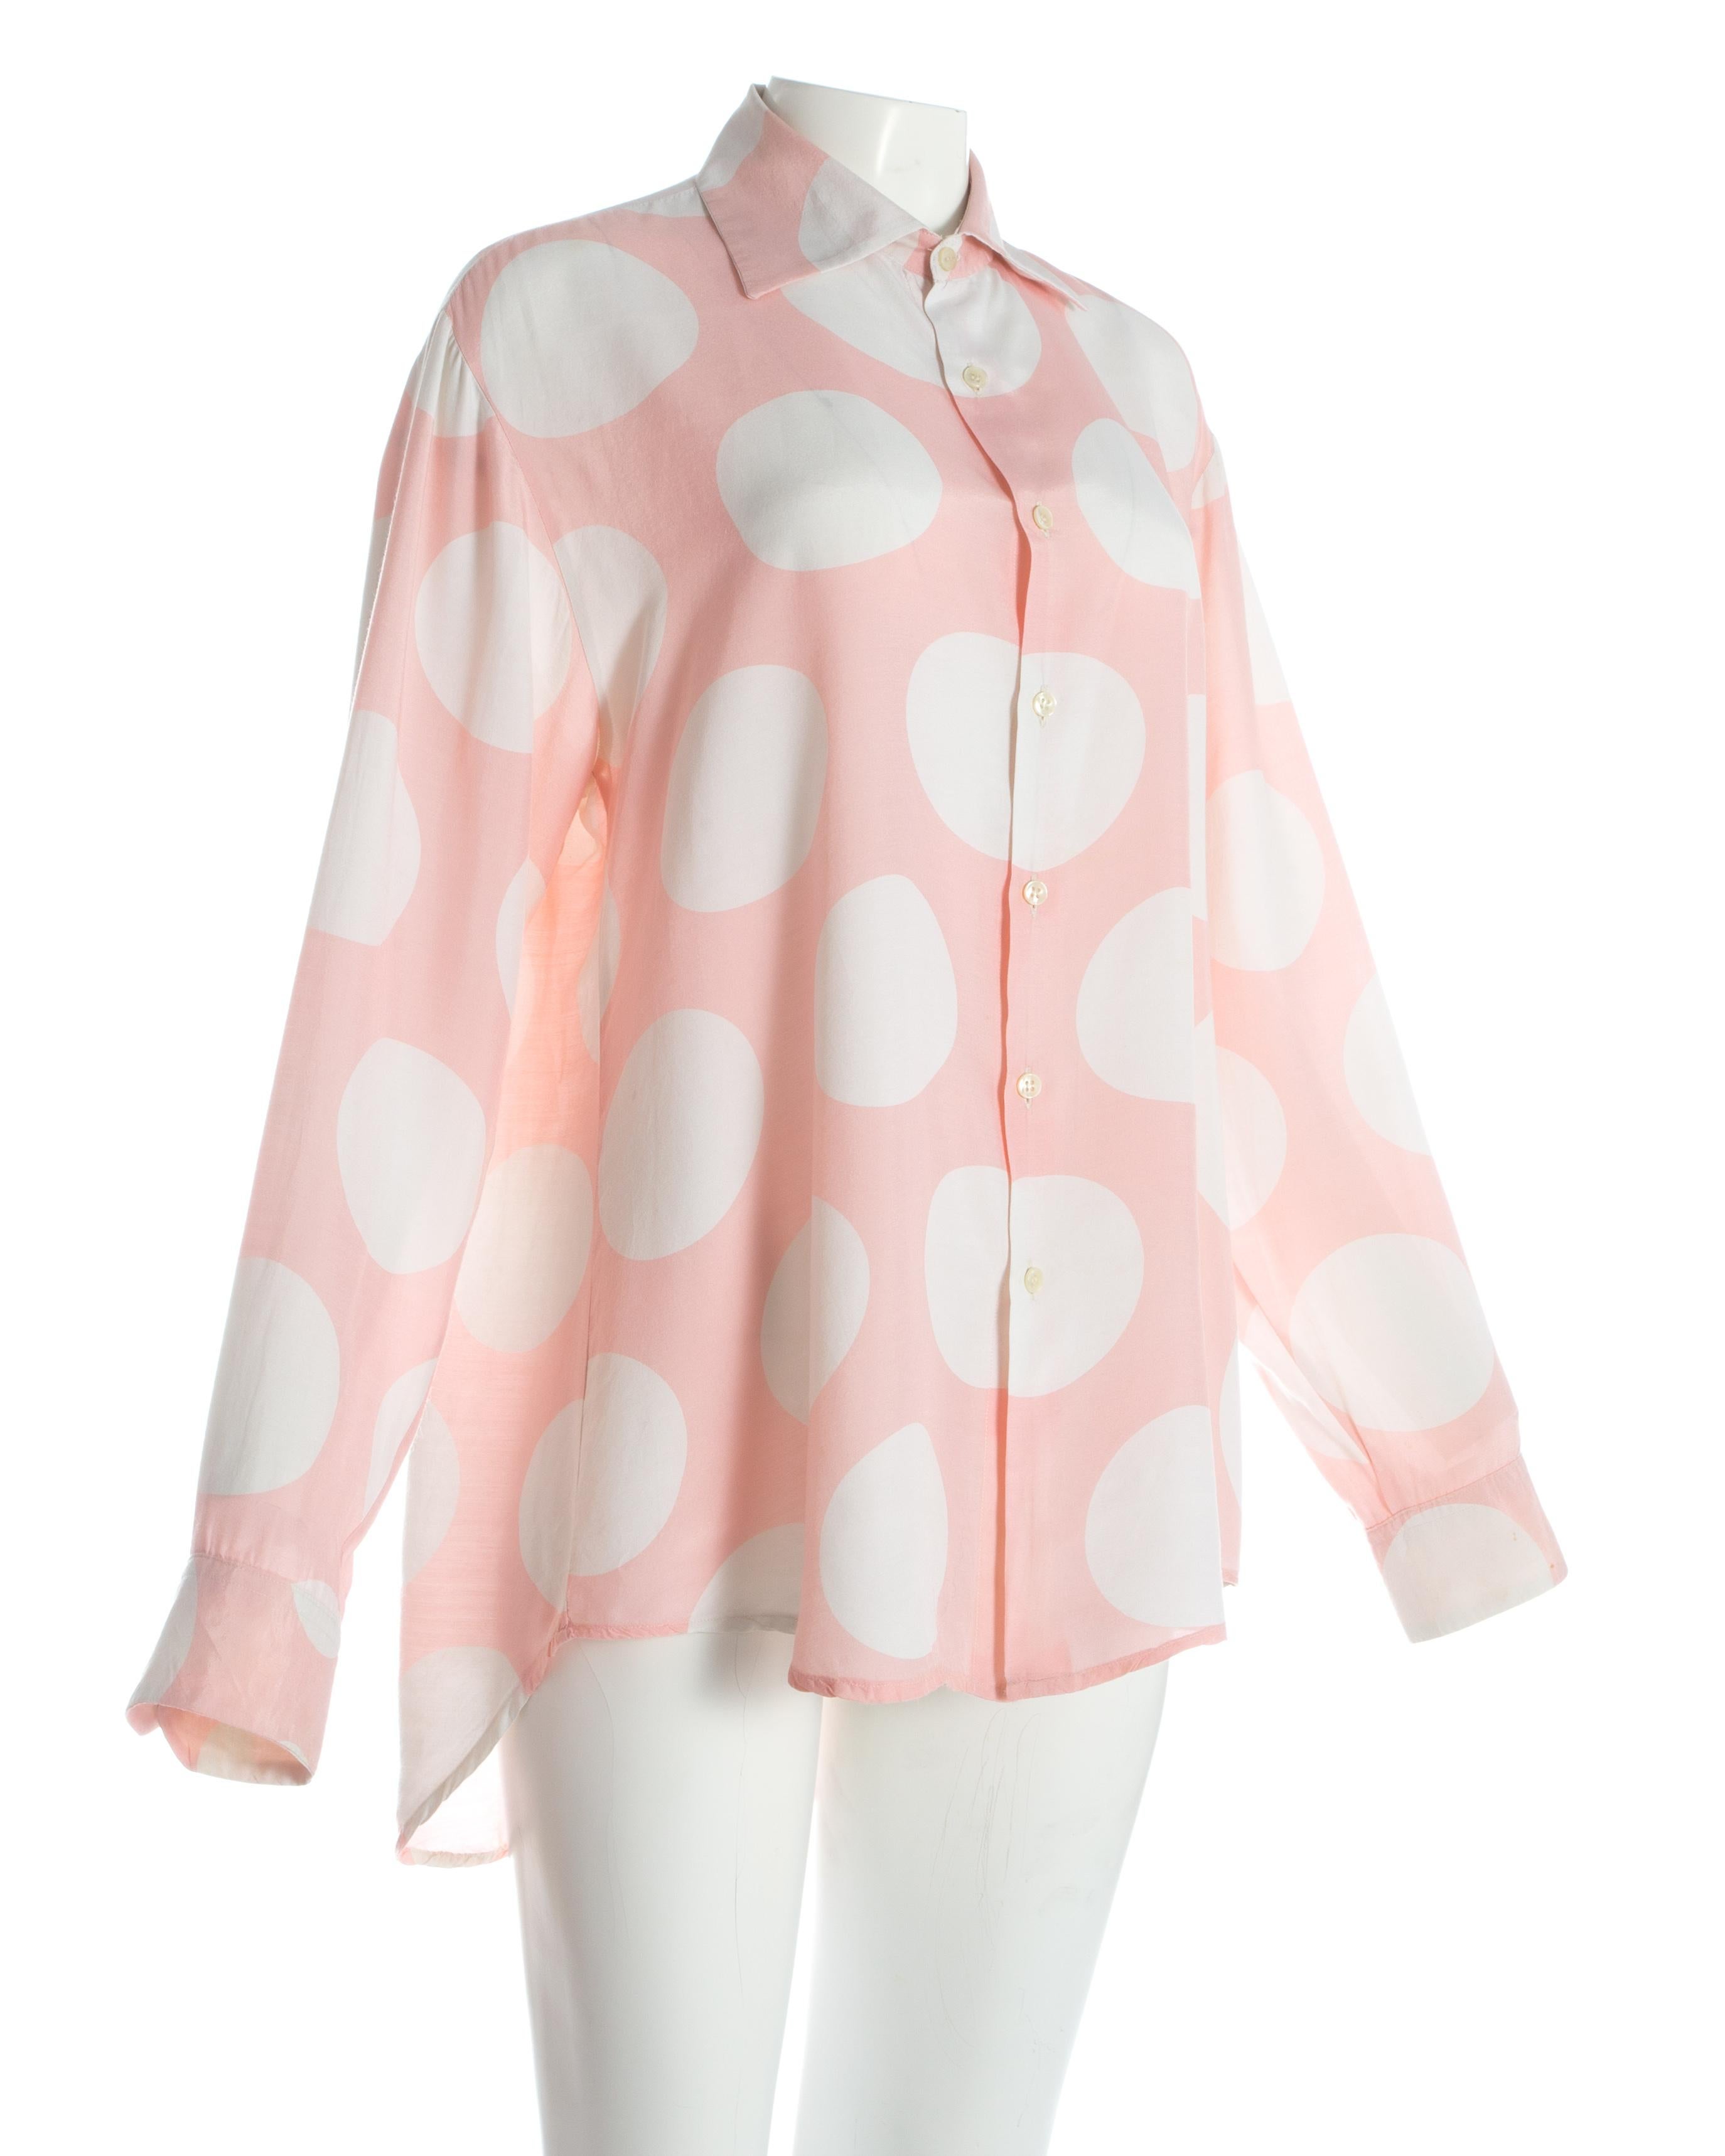 pink and white polka dot shirt